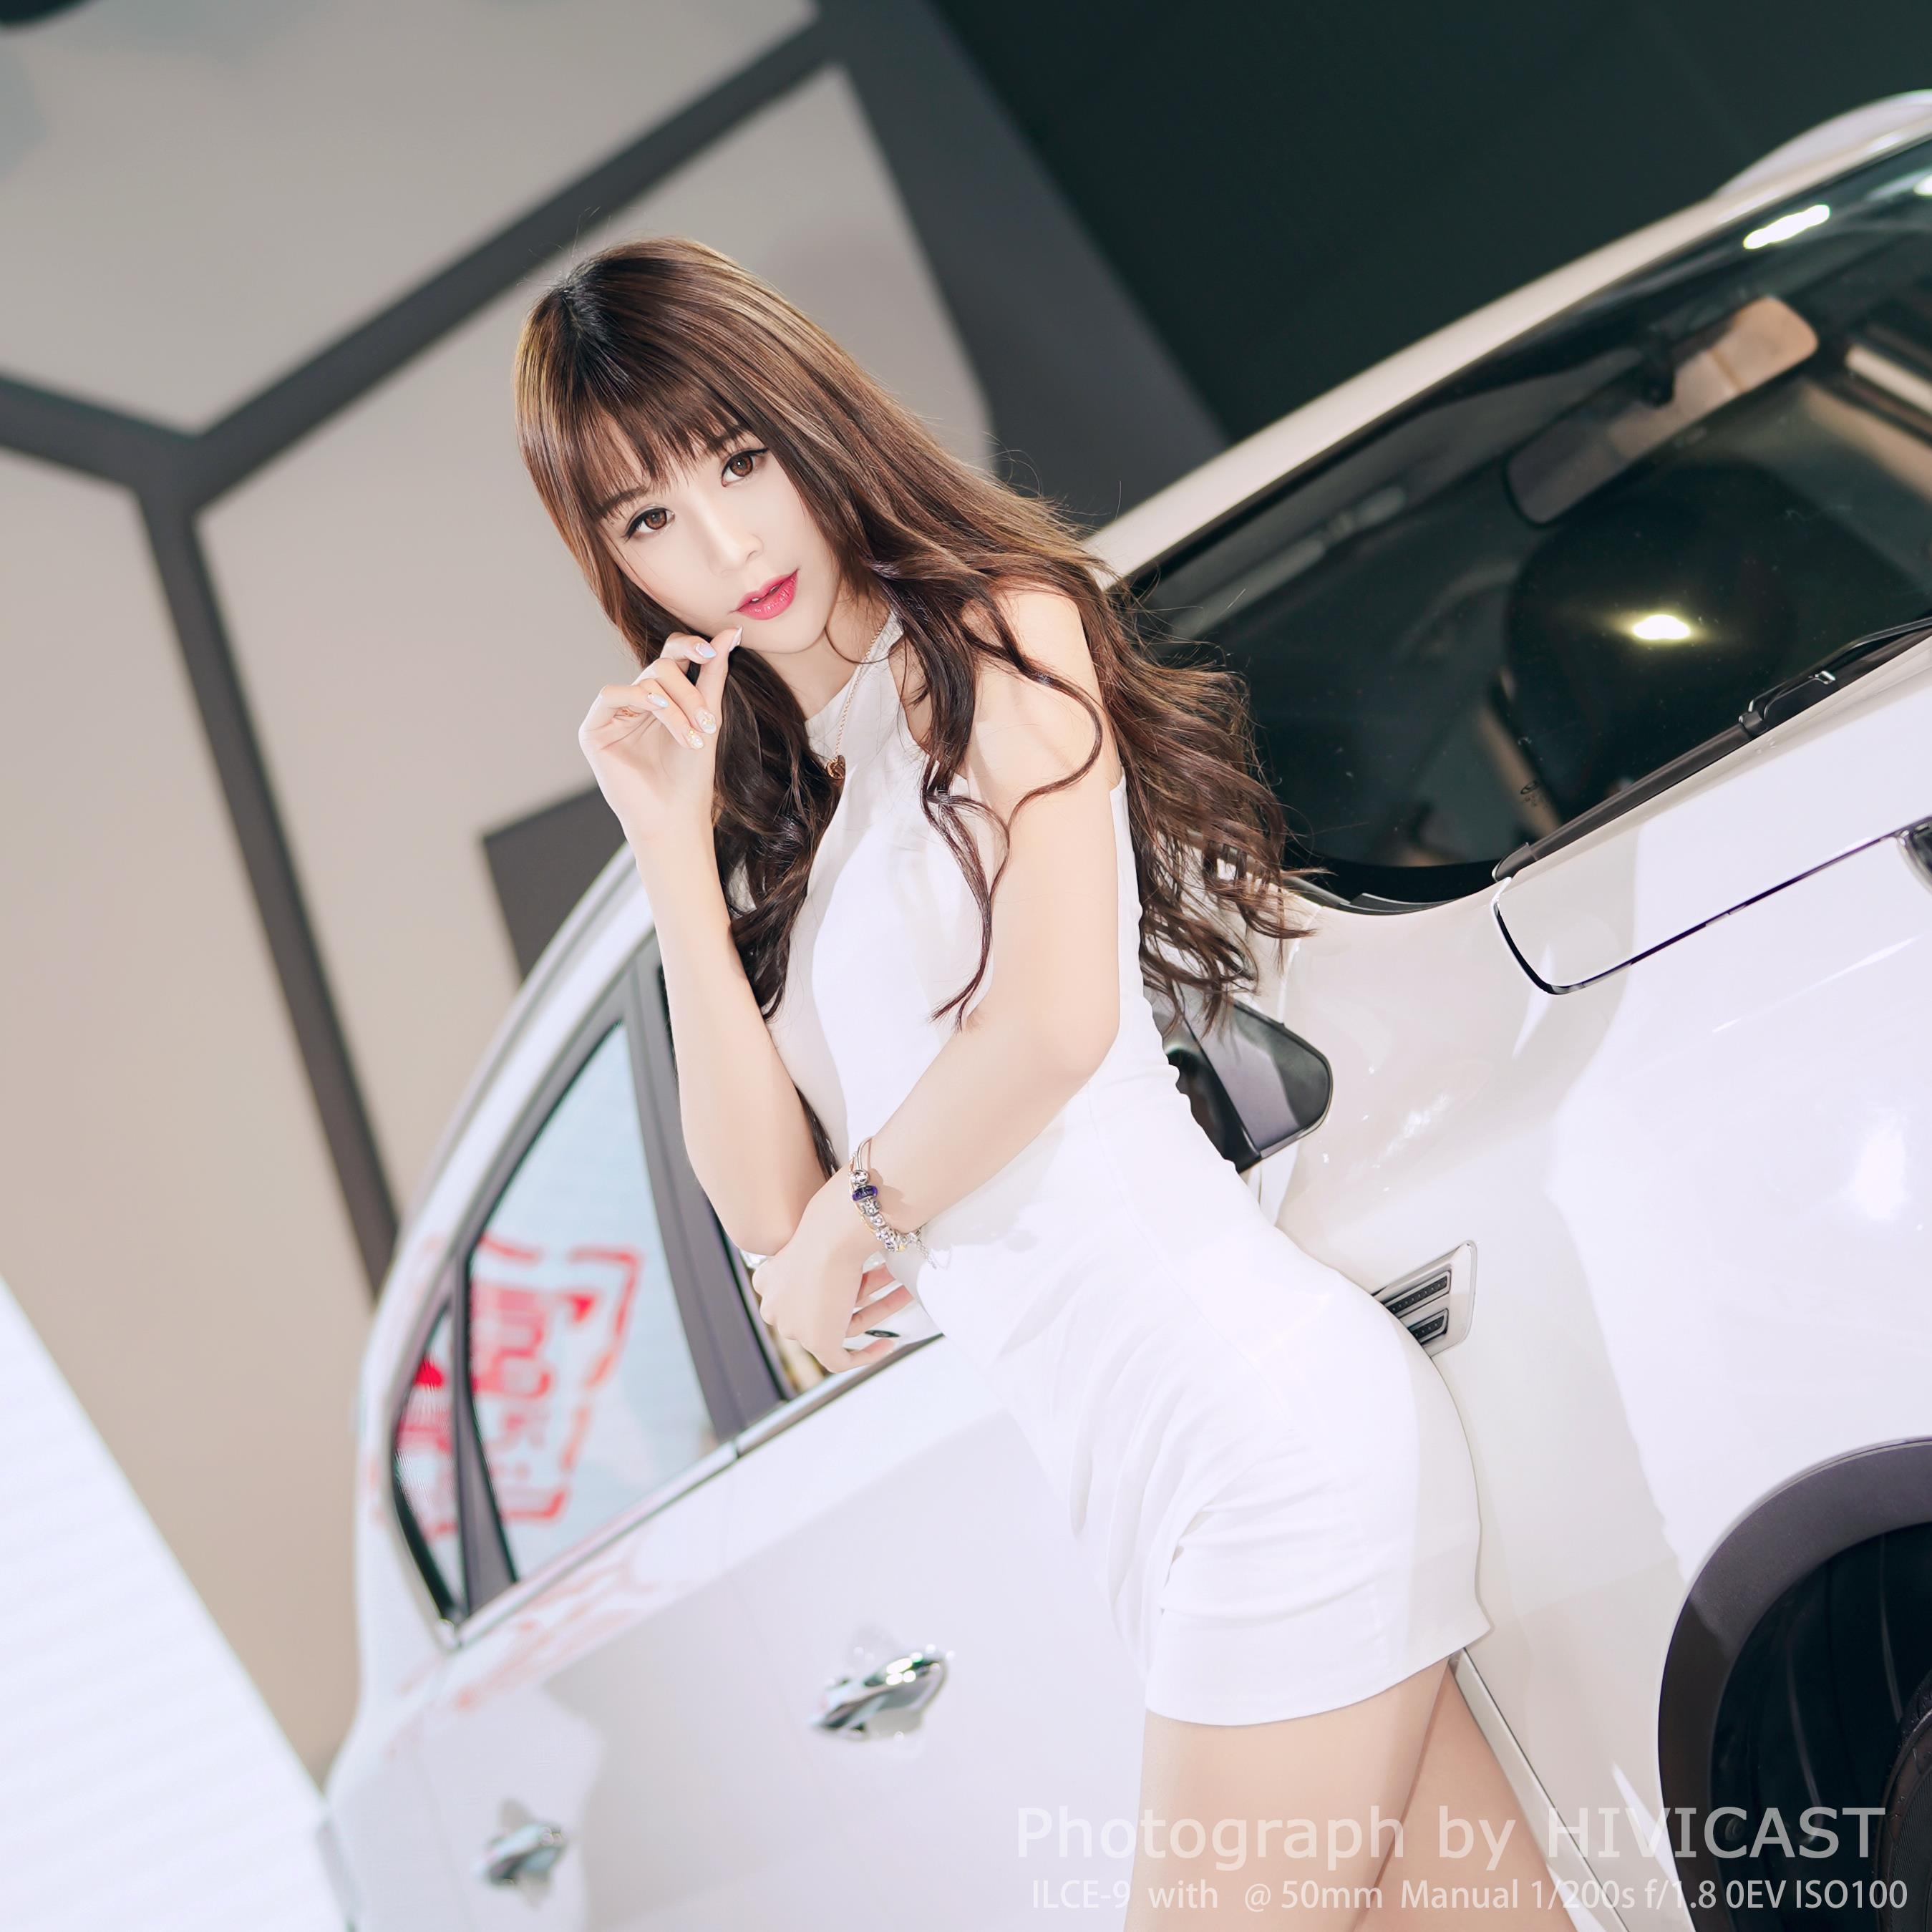 2017广州车展 华泰汽车展台 身穿白色吊脖连身裙的美女车模,